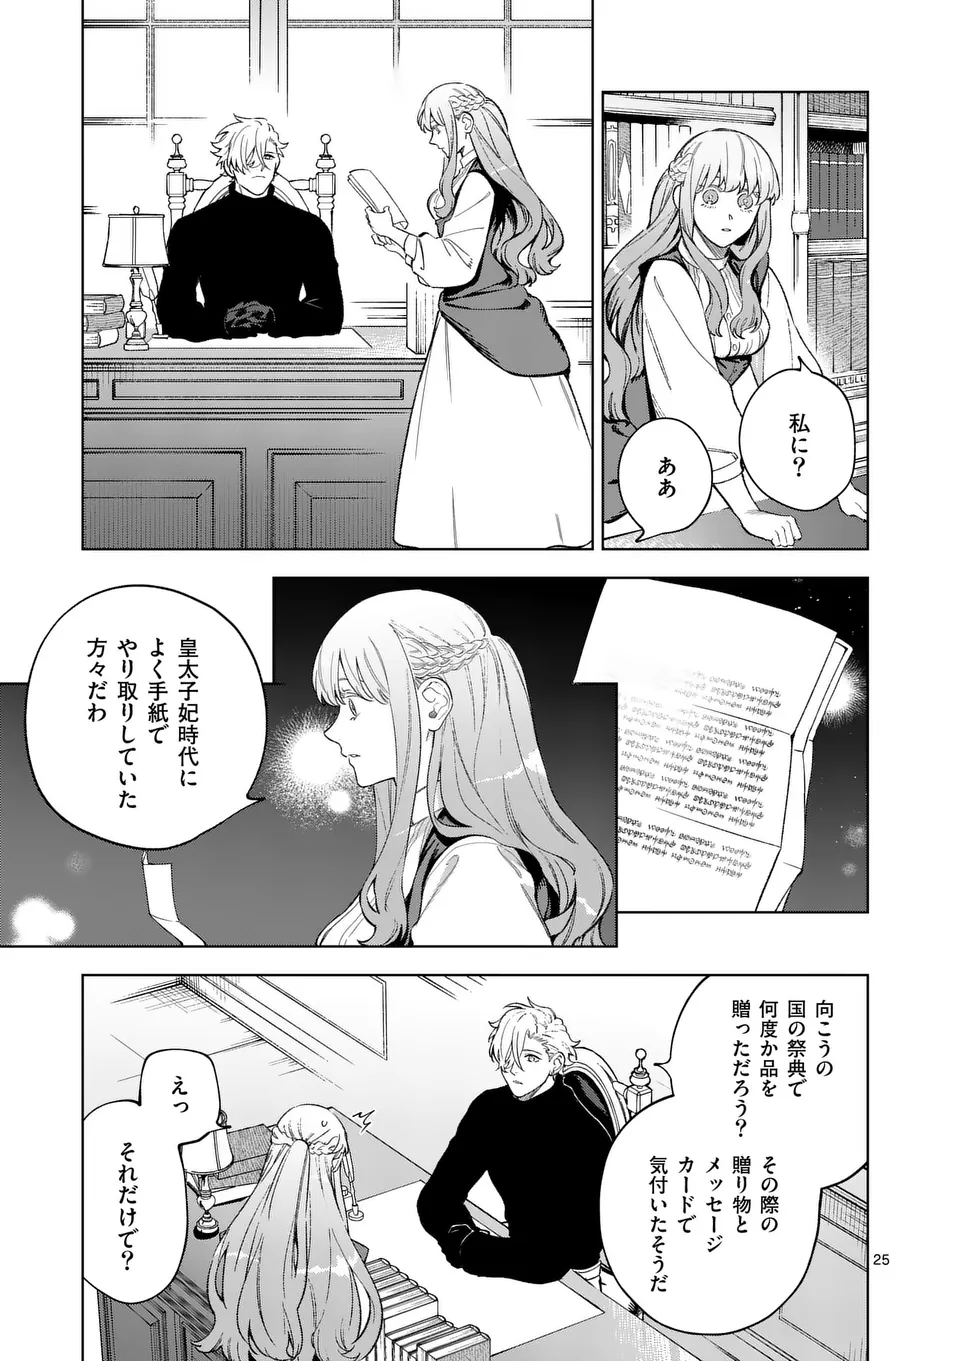 Mou Kyoumi ga Nai to Rikonsareta Reijou no Igai to Tanoshii Shinseikatsu - Chapter 11.2 - Page 2